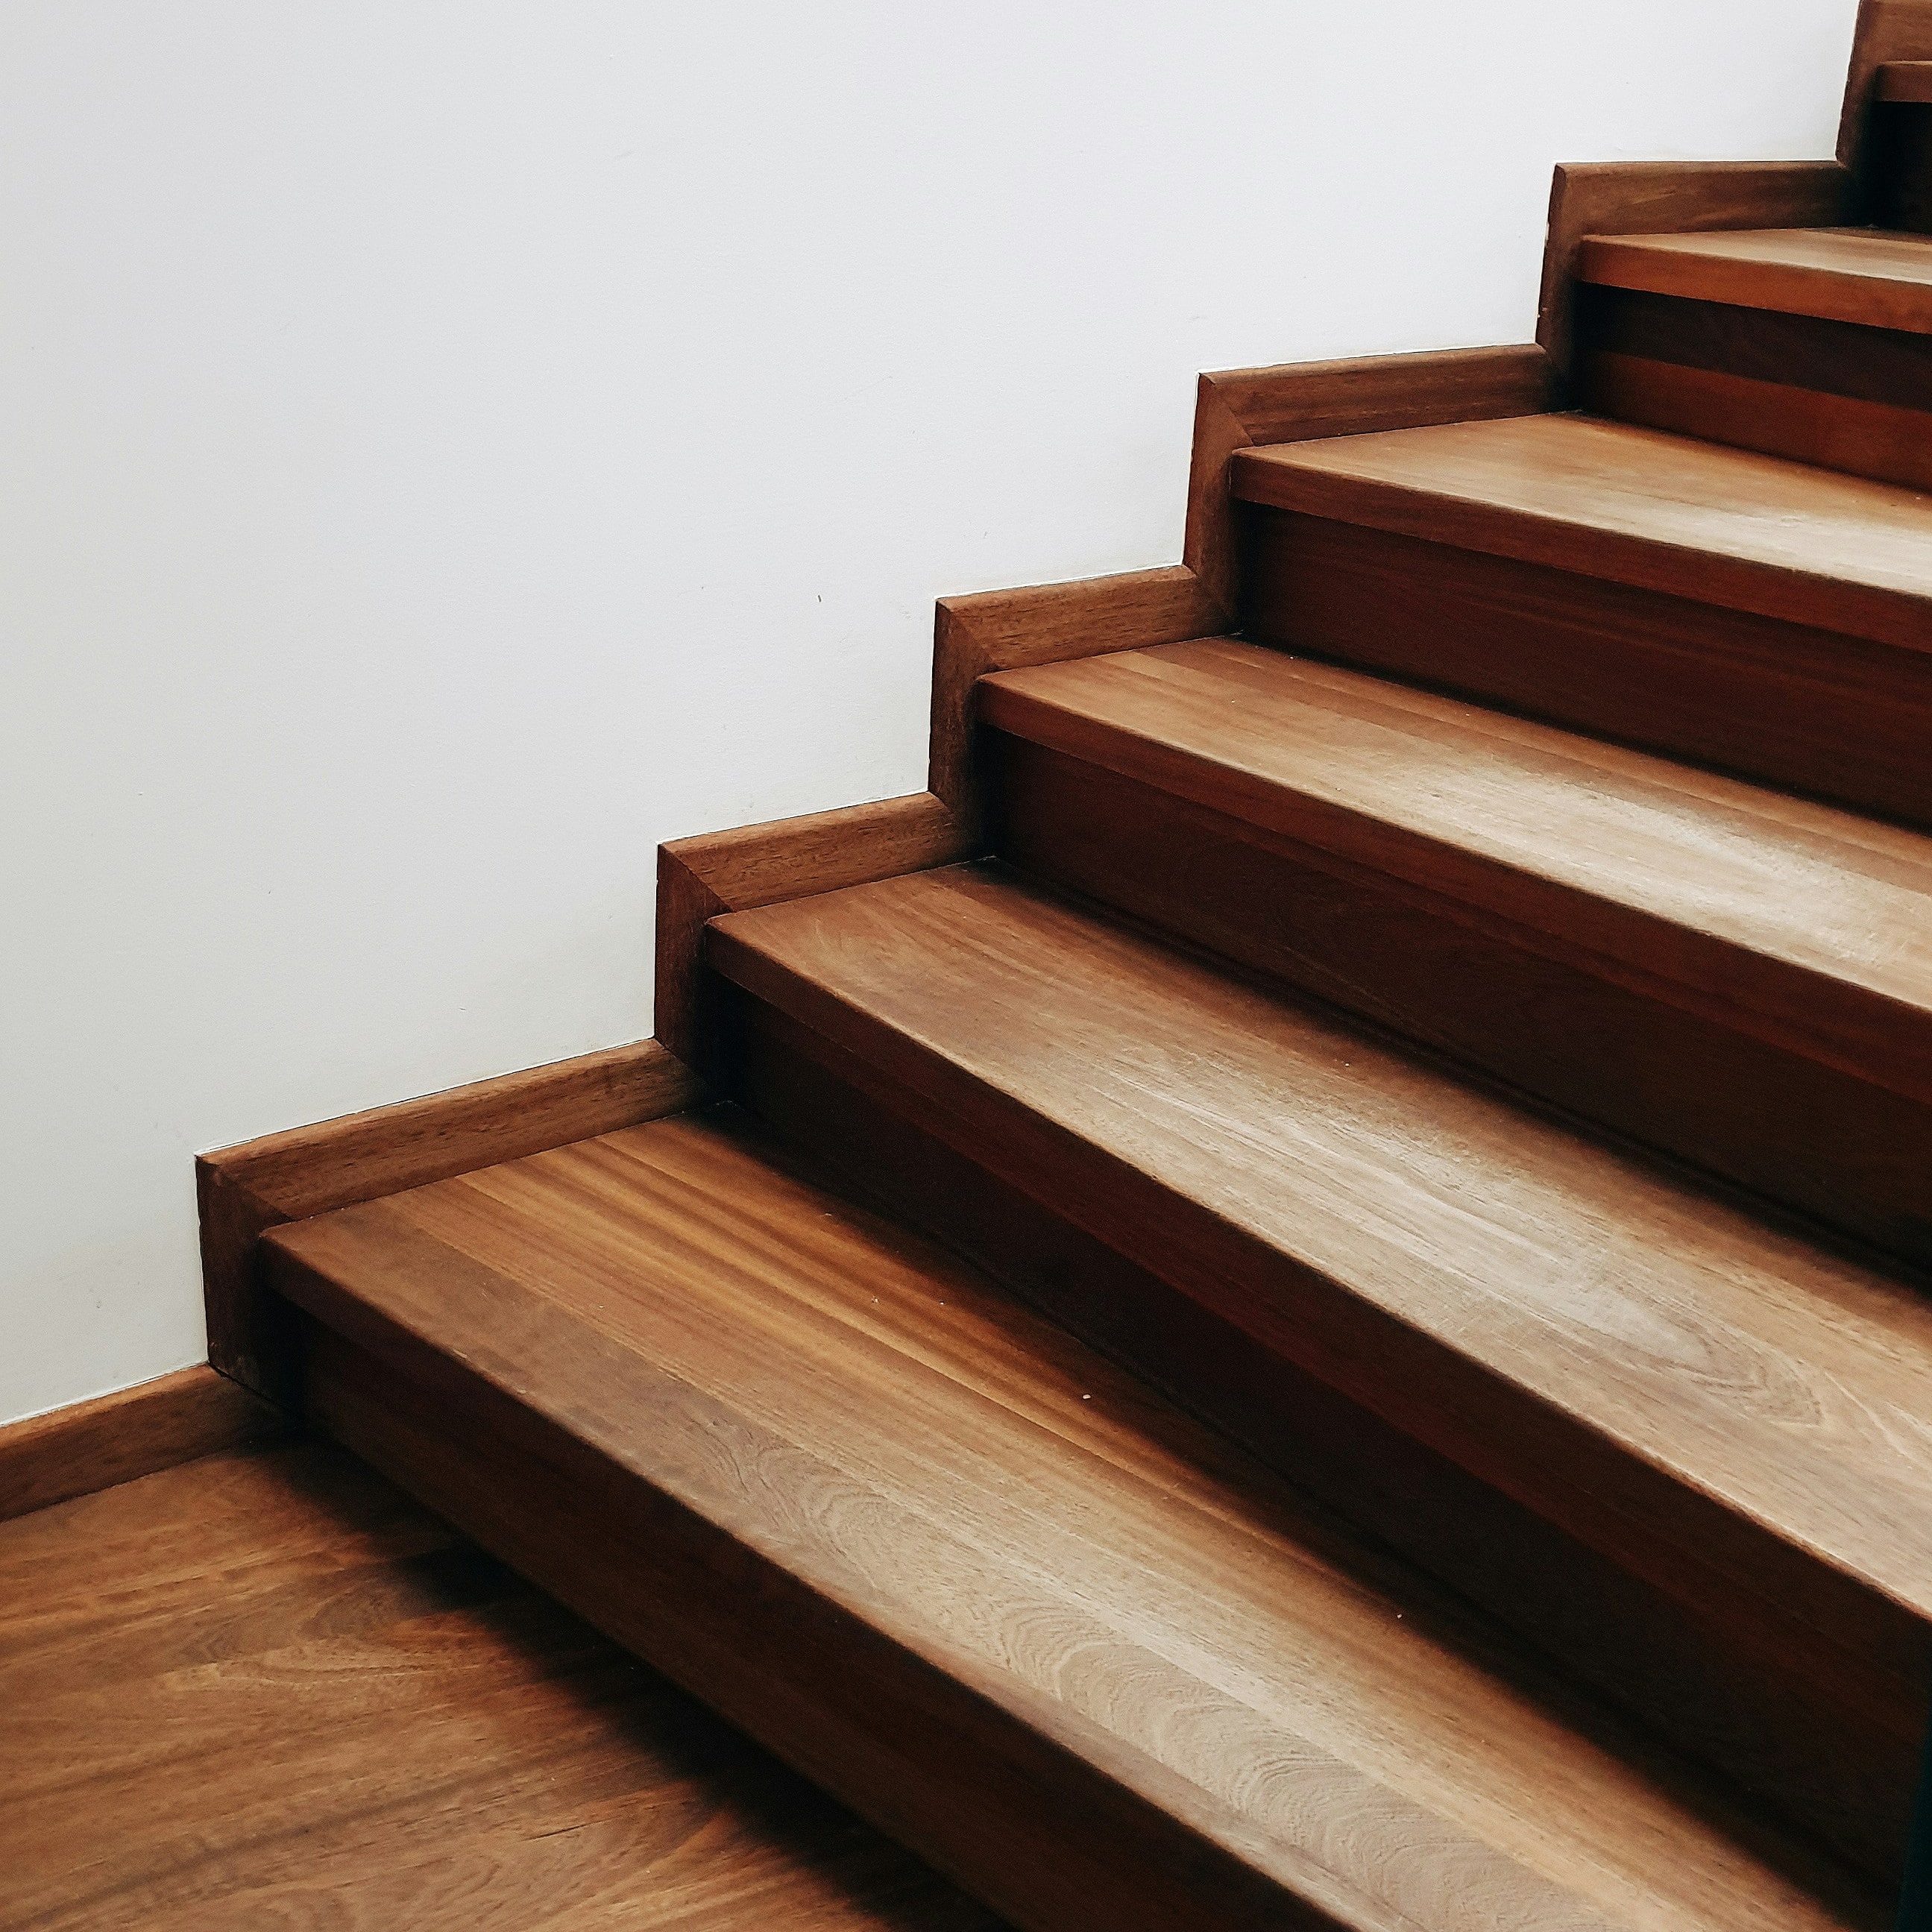 Comment rénover un escalier en bois - Gros plan sur des marches d'escalier en bois